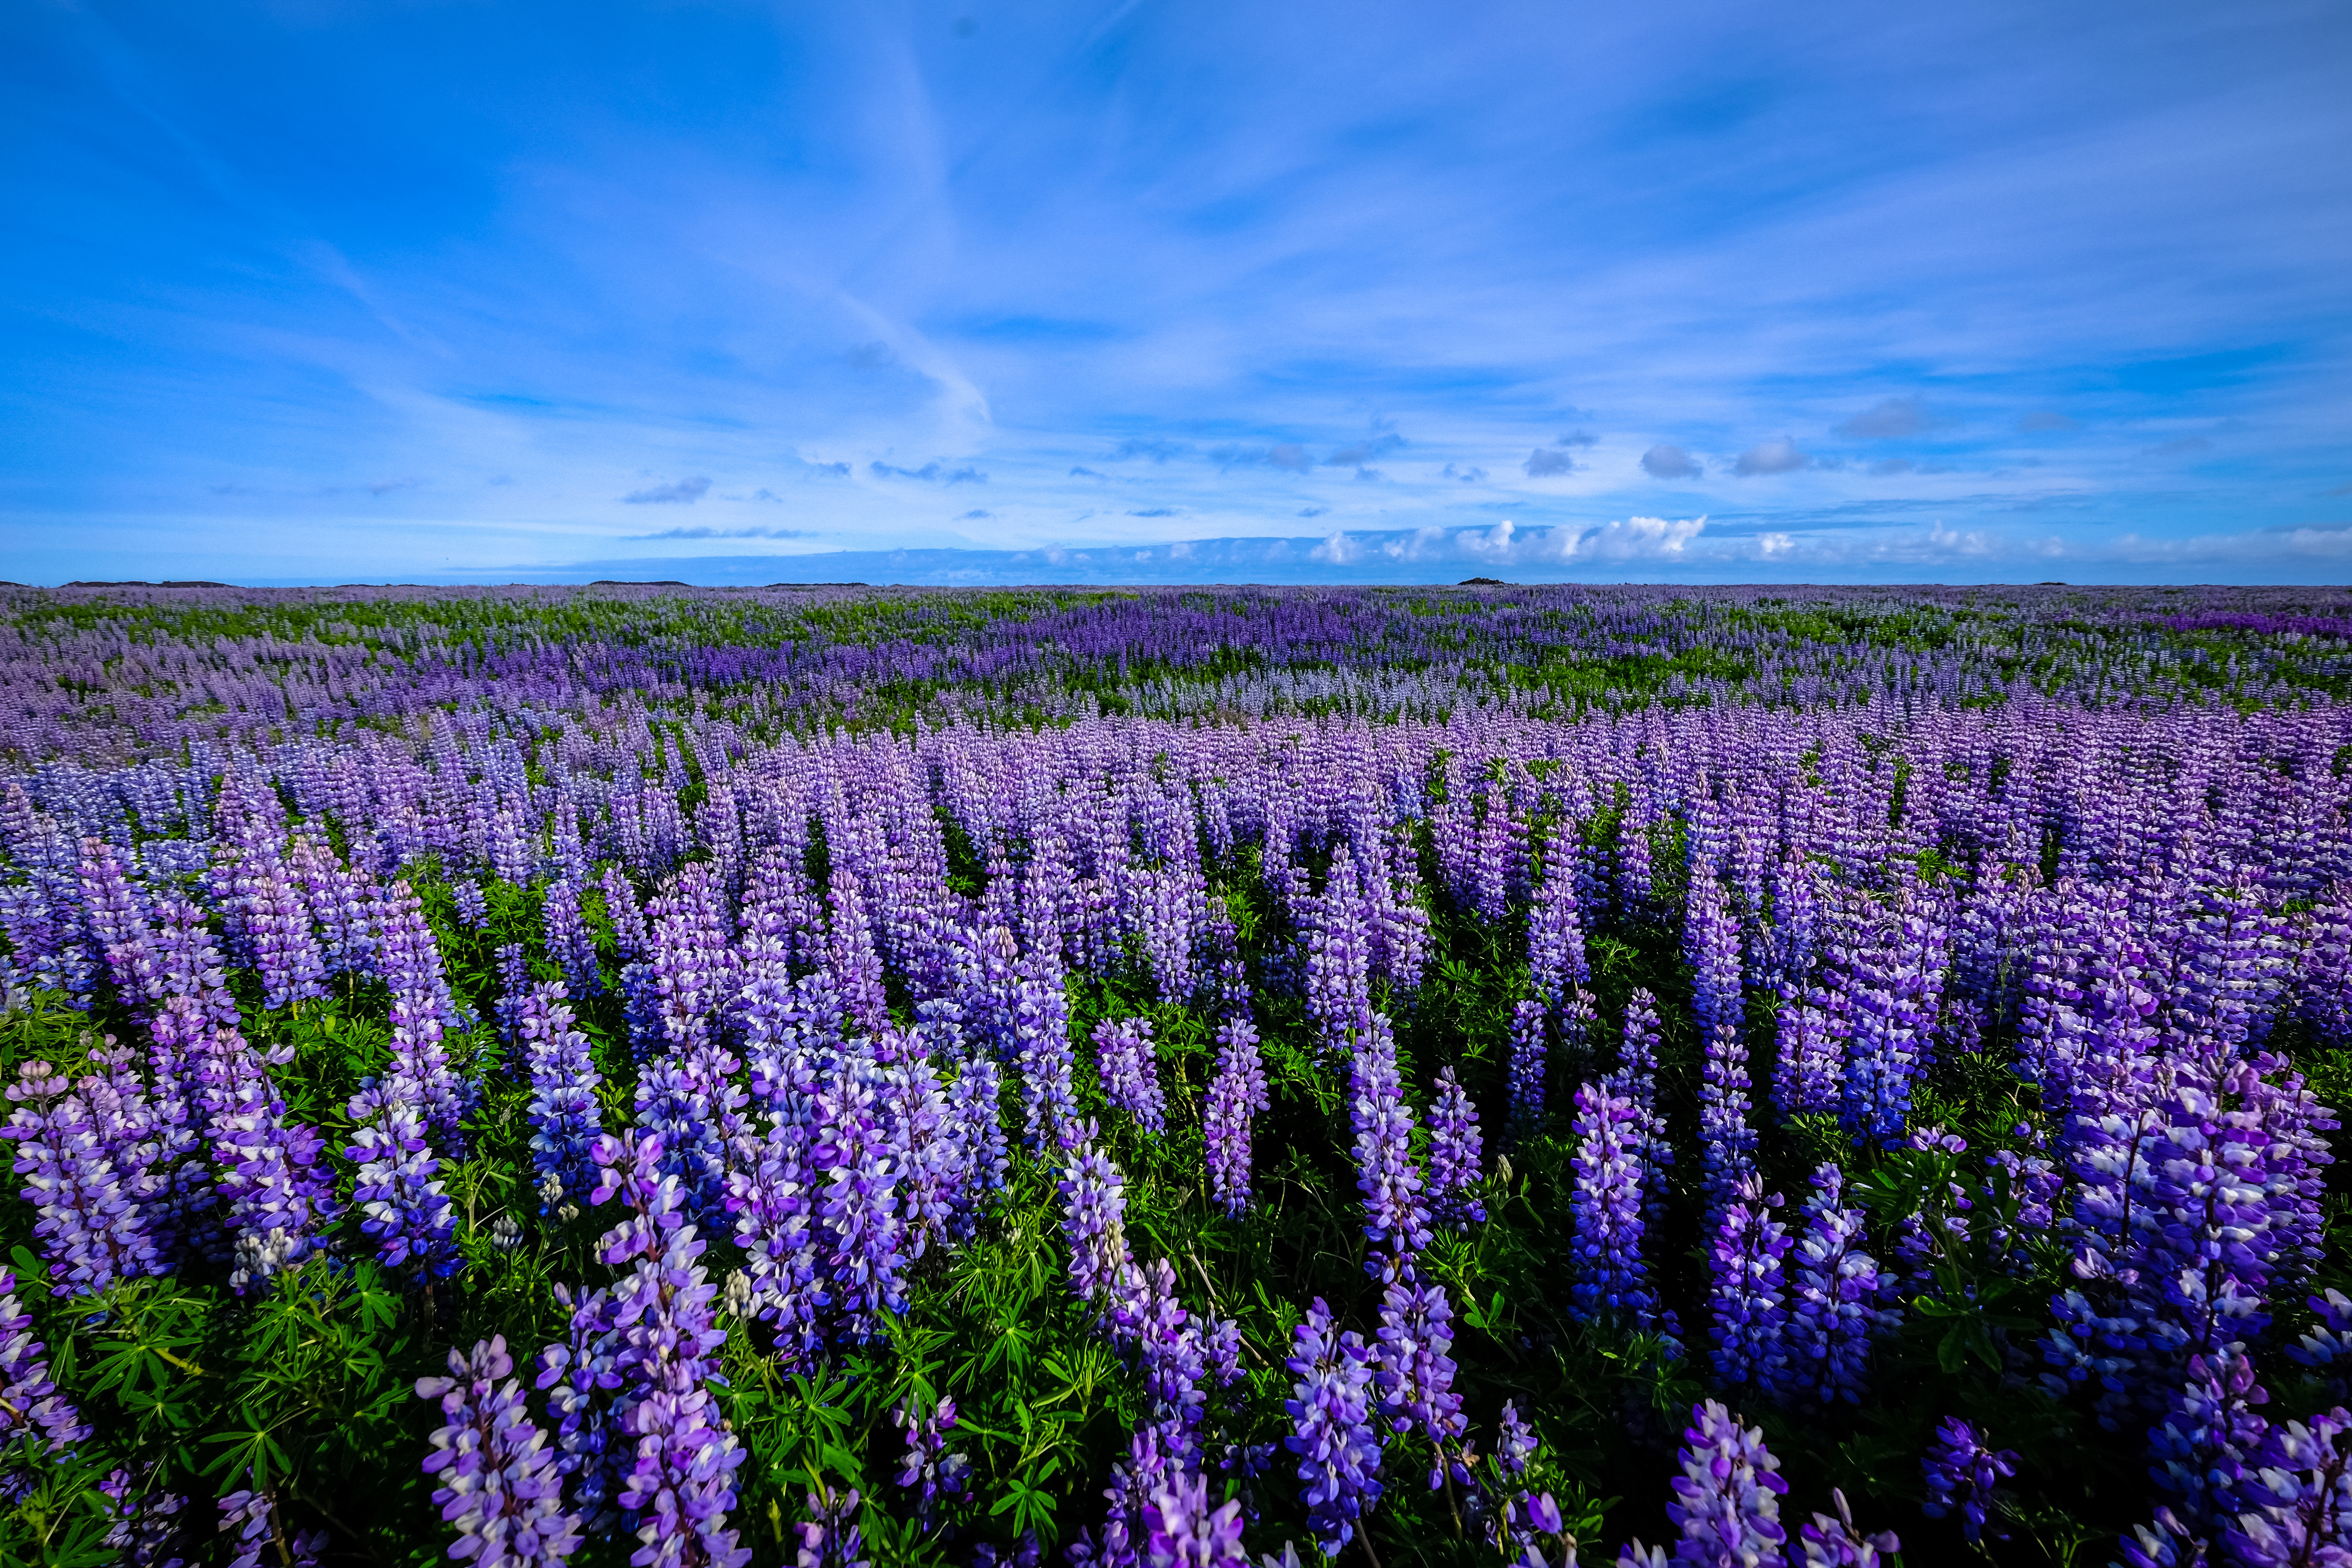 Purple Flower Field landscape image - Free stock photo - Public ...